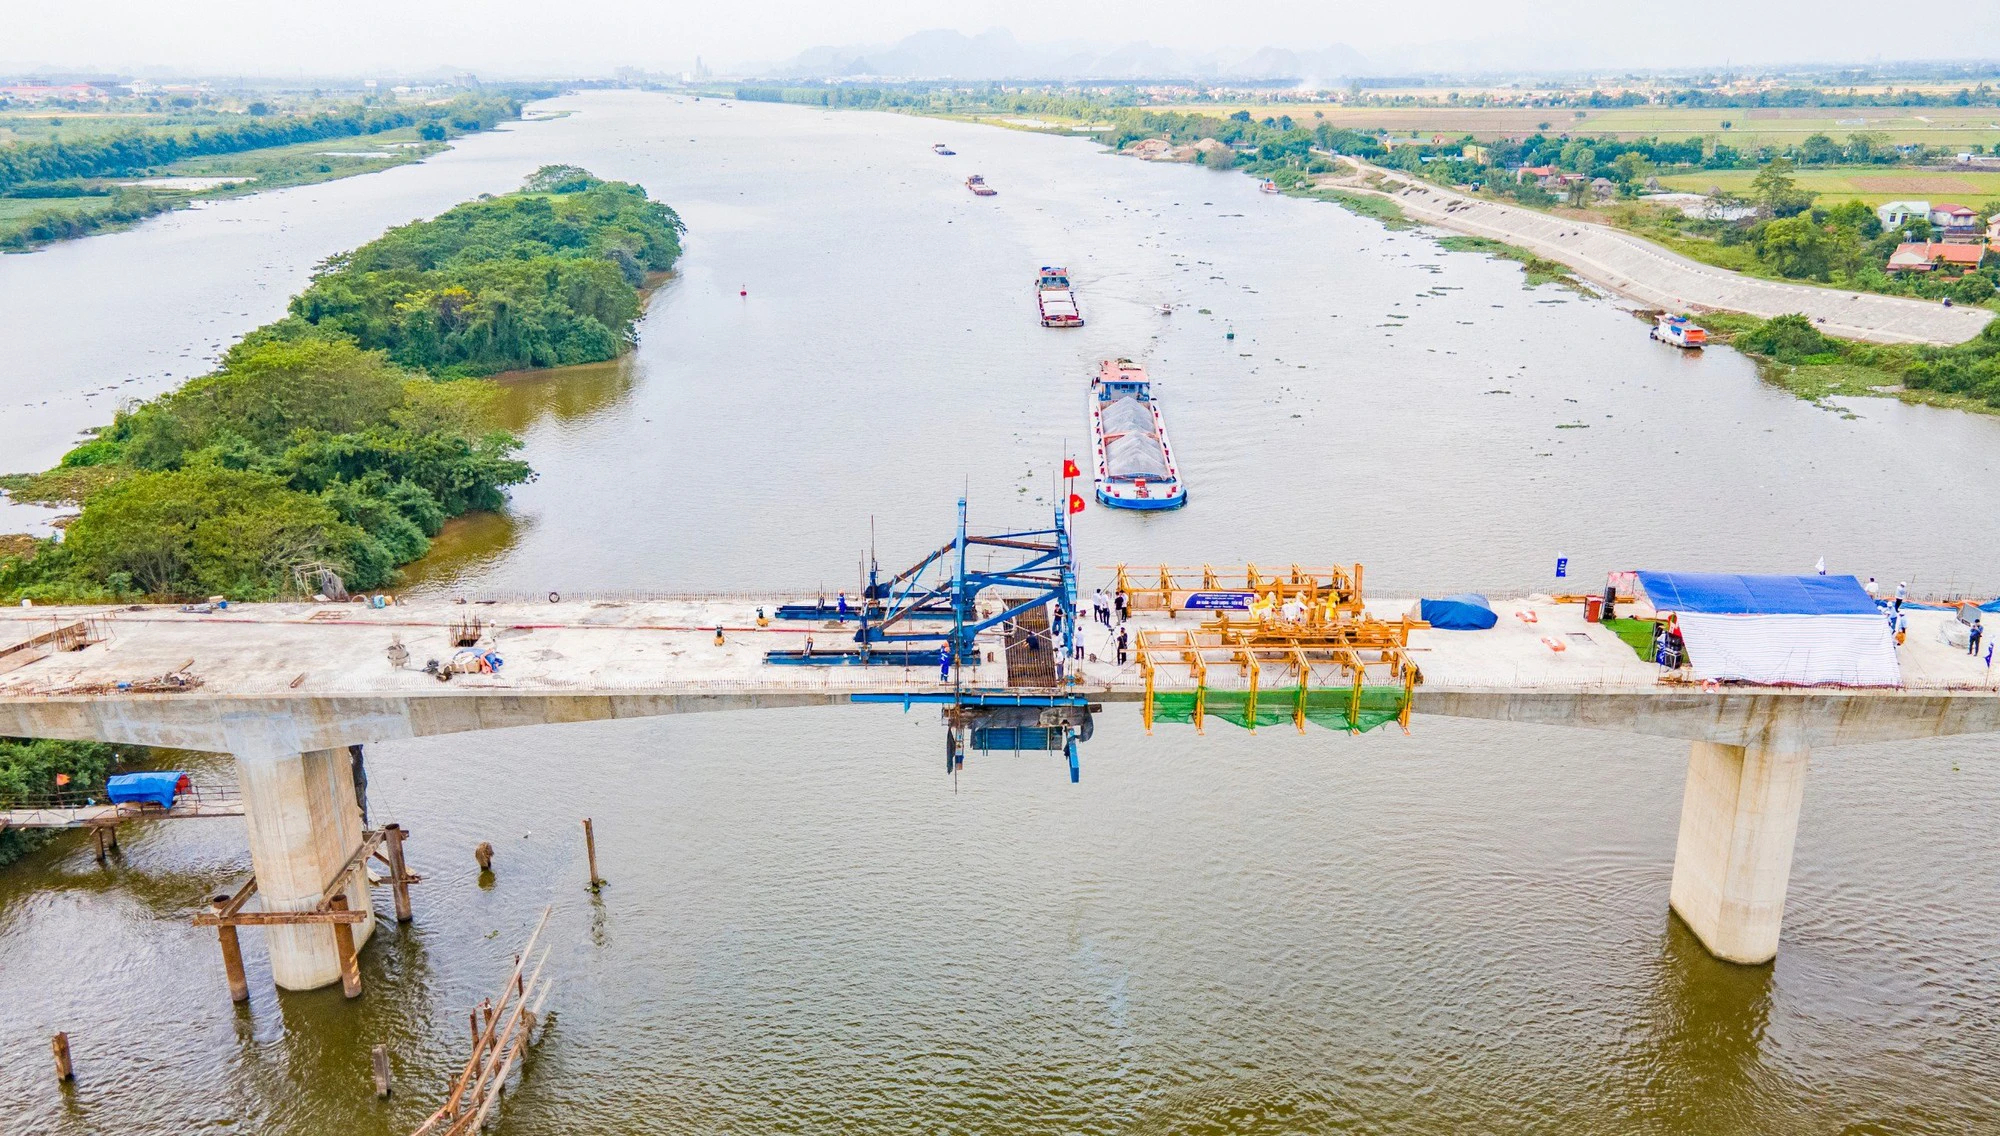 Hợp long cầu Bến Mới nối Nam Định - Ninh Bình - Ảnh 1.